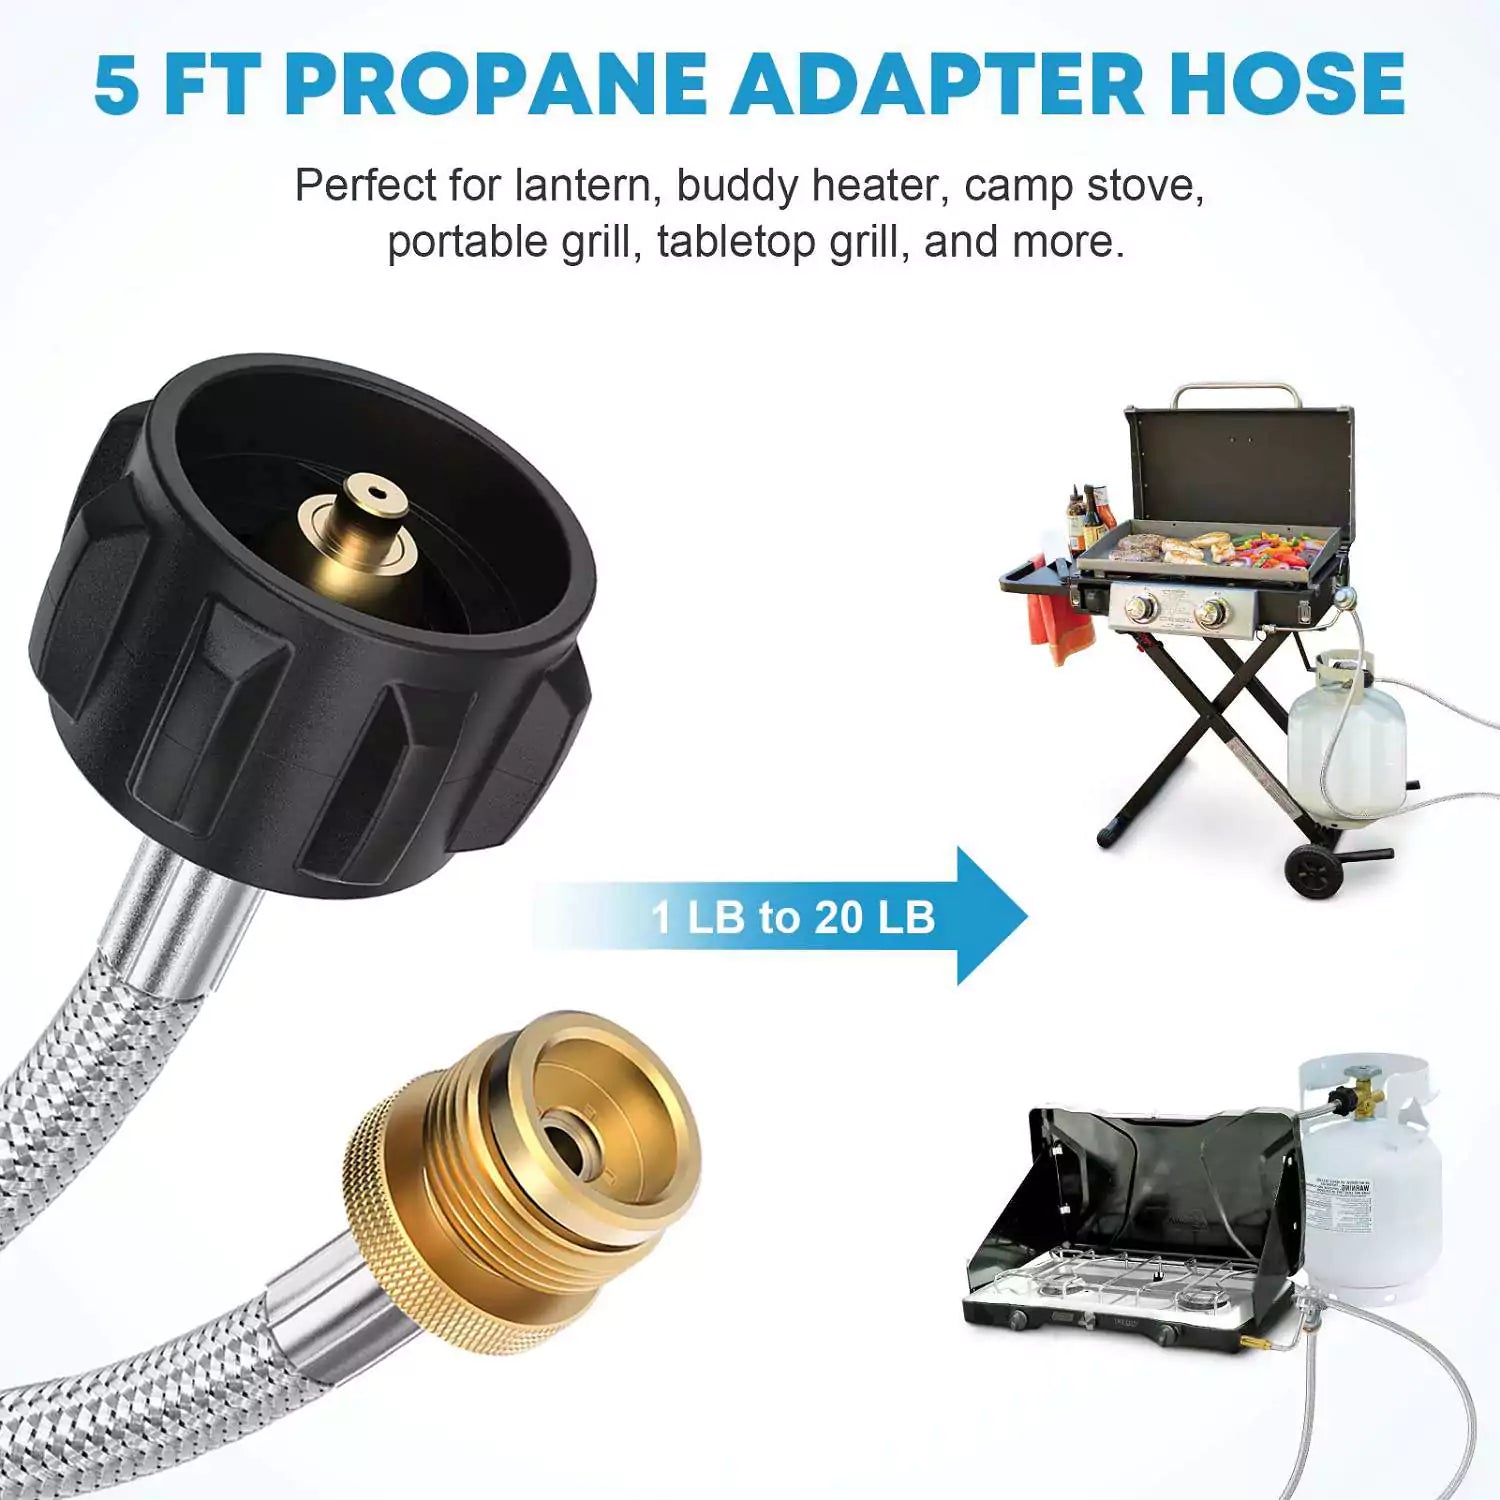 5 ft propane adapter hose for lantern